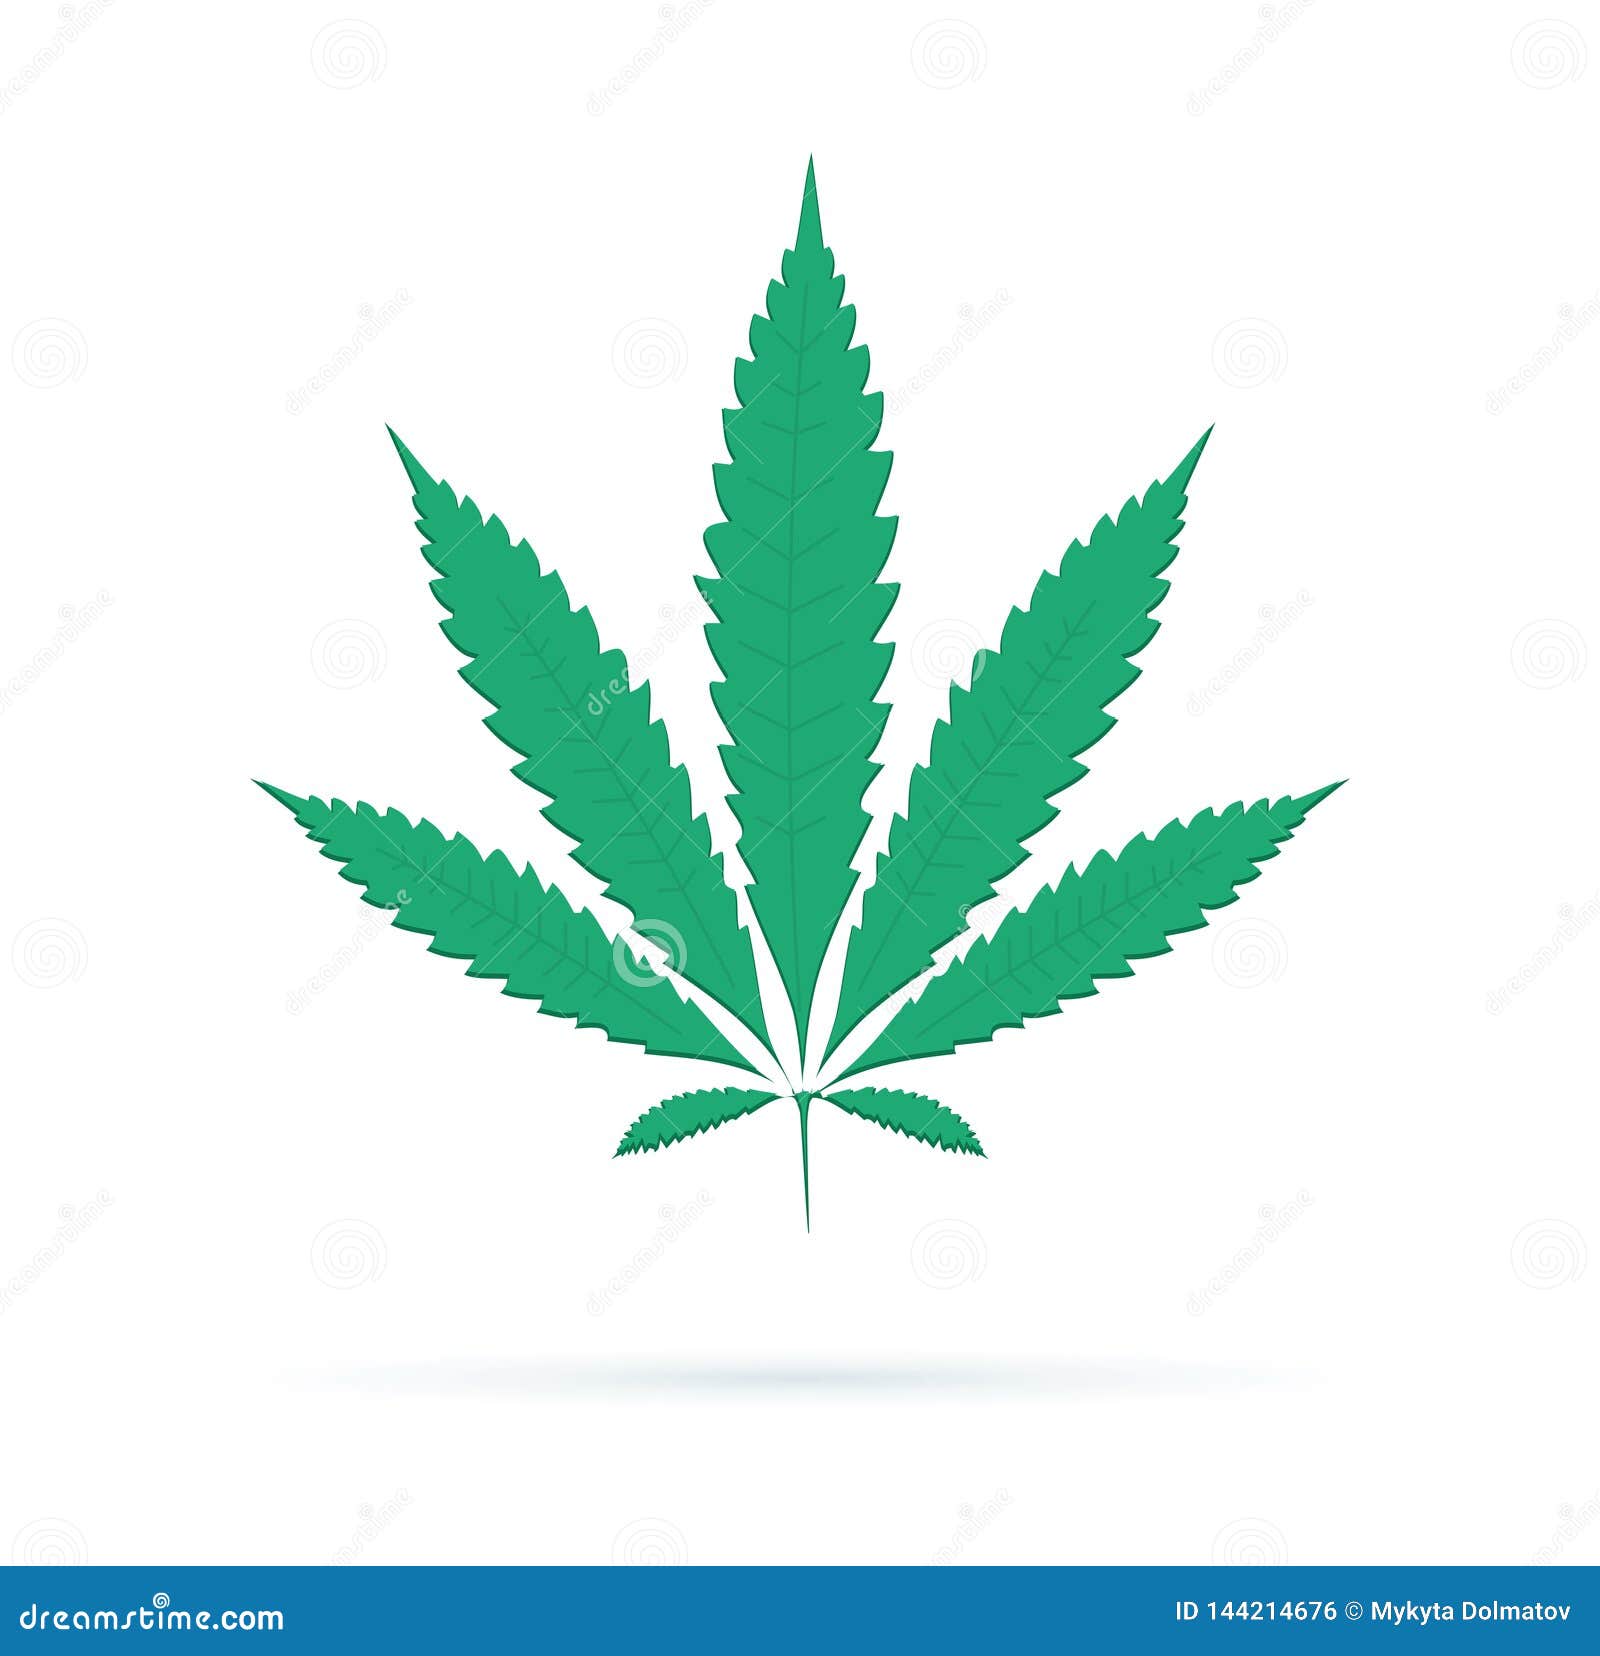 Из символов конопля марихуана в доминиканой